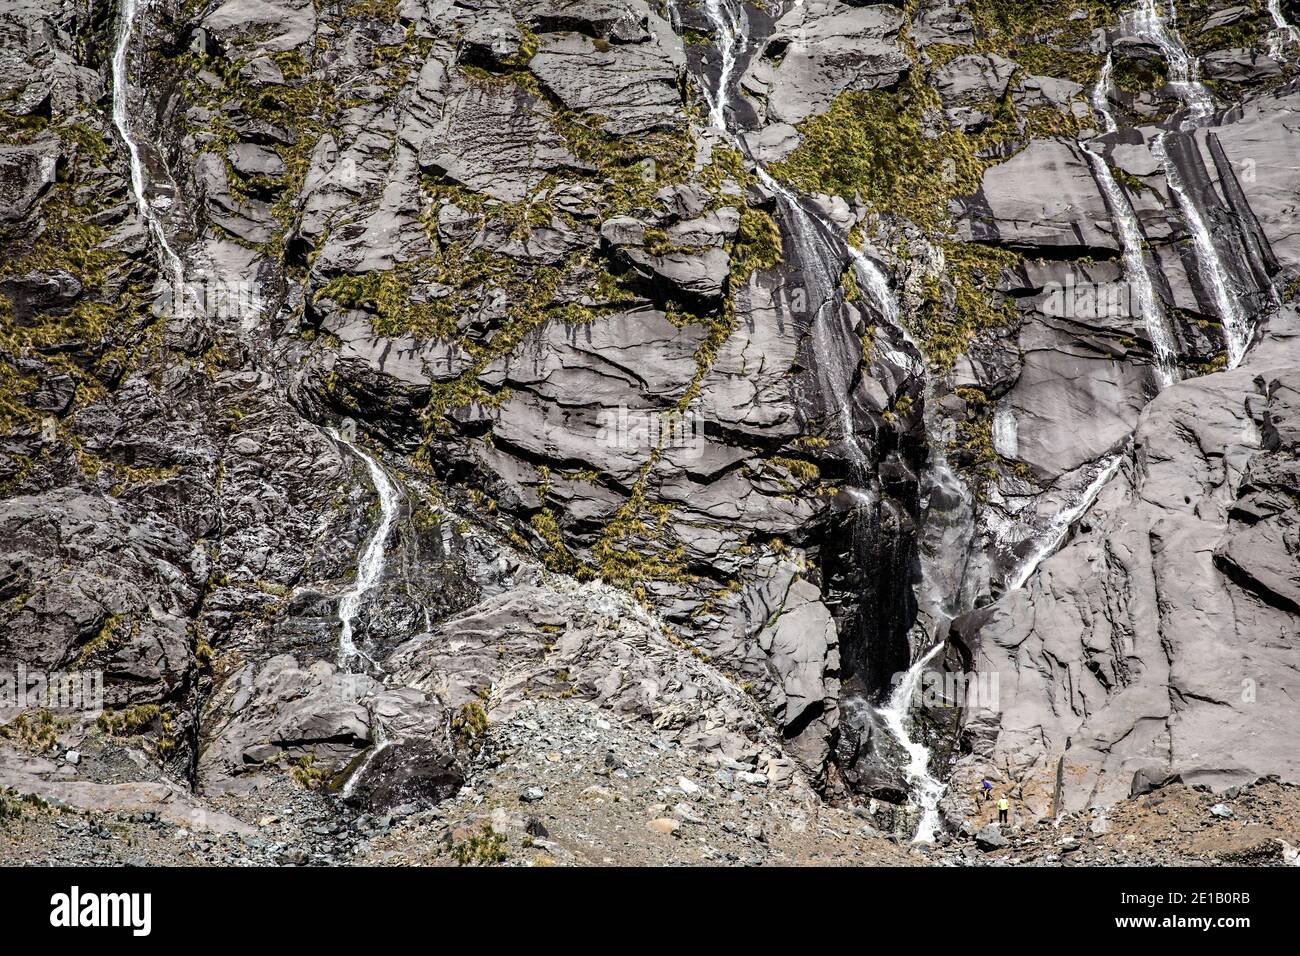 Les randonneurs admirent plusieurs cascades sur une falaise sur la route de Milford Sound, South Island, Nouvelle-Zélande Banque D'Images